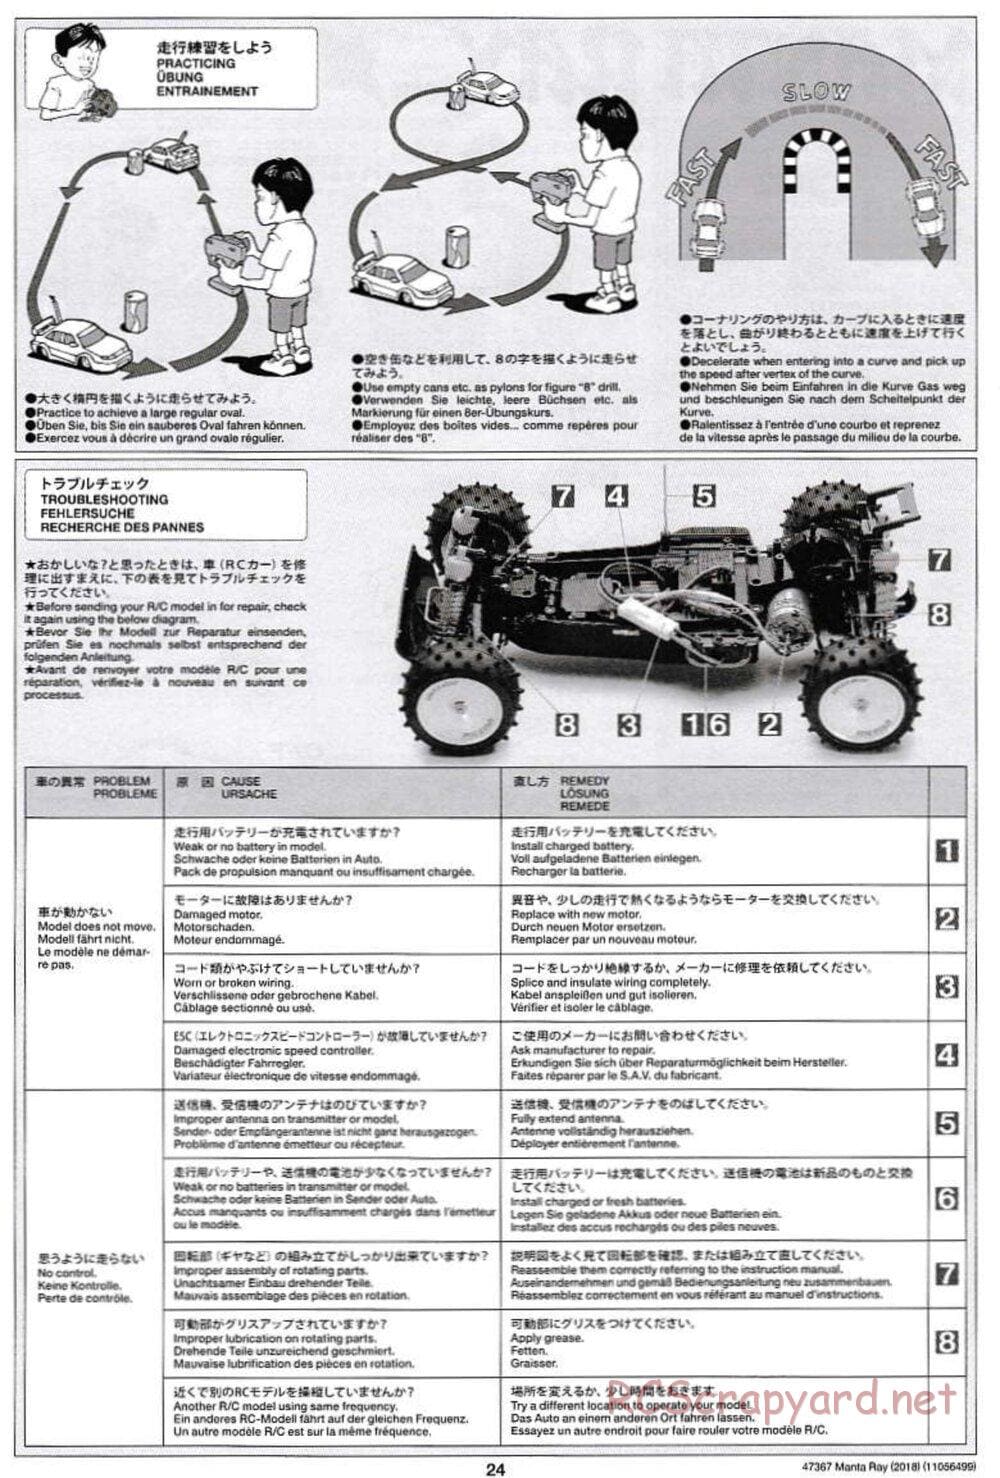 Tamiya - Manta Ray 2018 - DF-01 Chassis - Manual - Page 24